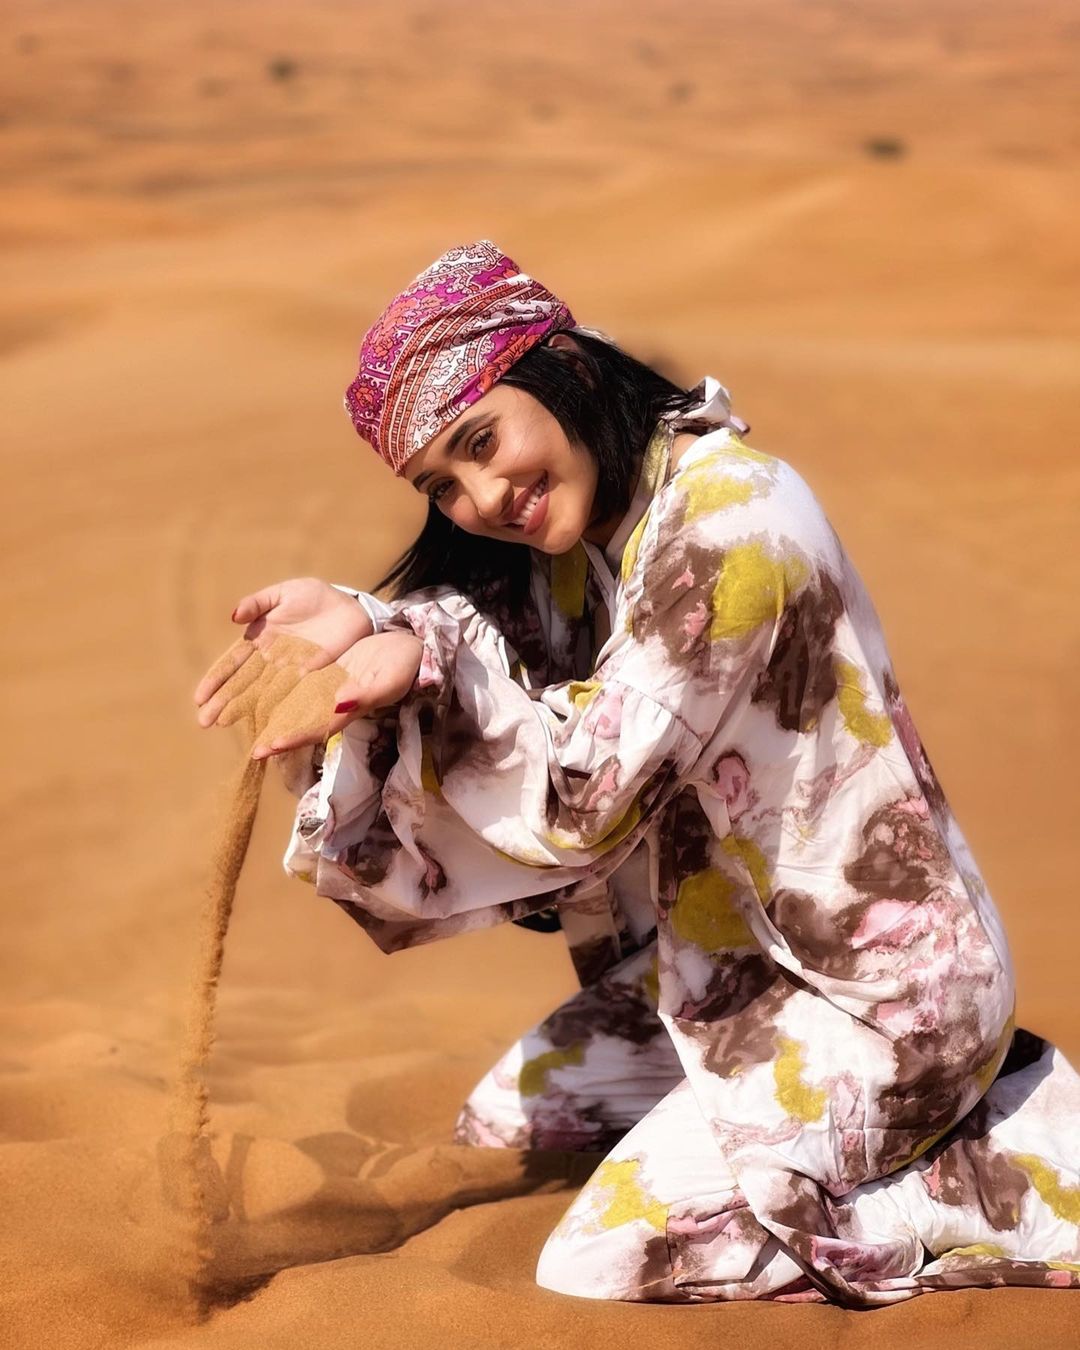  शिवांगी जोशी रेगिस्तान में बैठकर अपनी खूबसूरत स्माइल दिखा रही हैं. वह रेगिस्तान की रेत से खेलते हुए भी नजर आ रही हैं. (फोटो साभारः Instagram @shivangijoshi18)